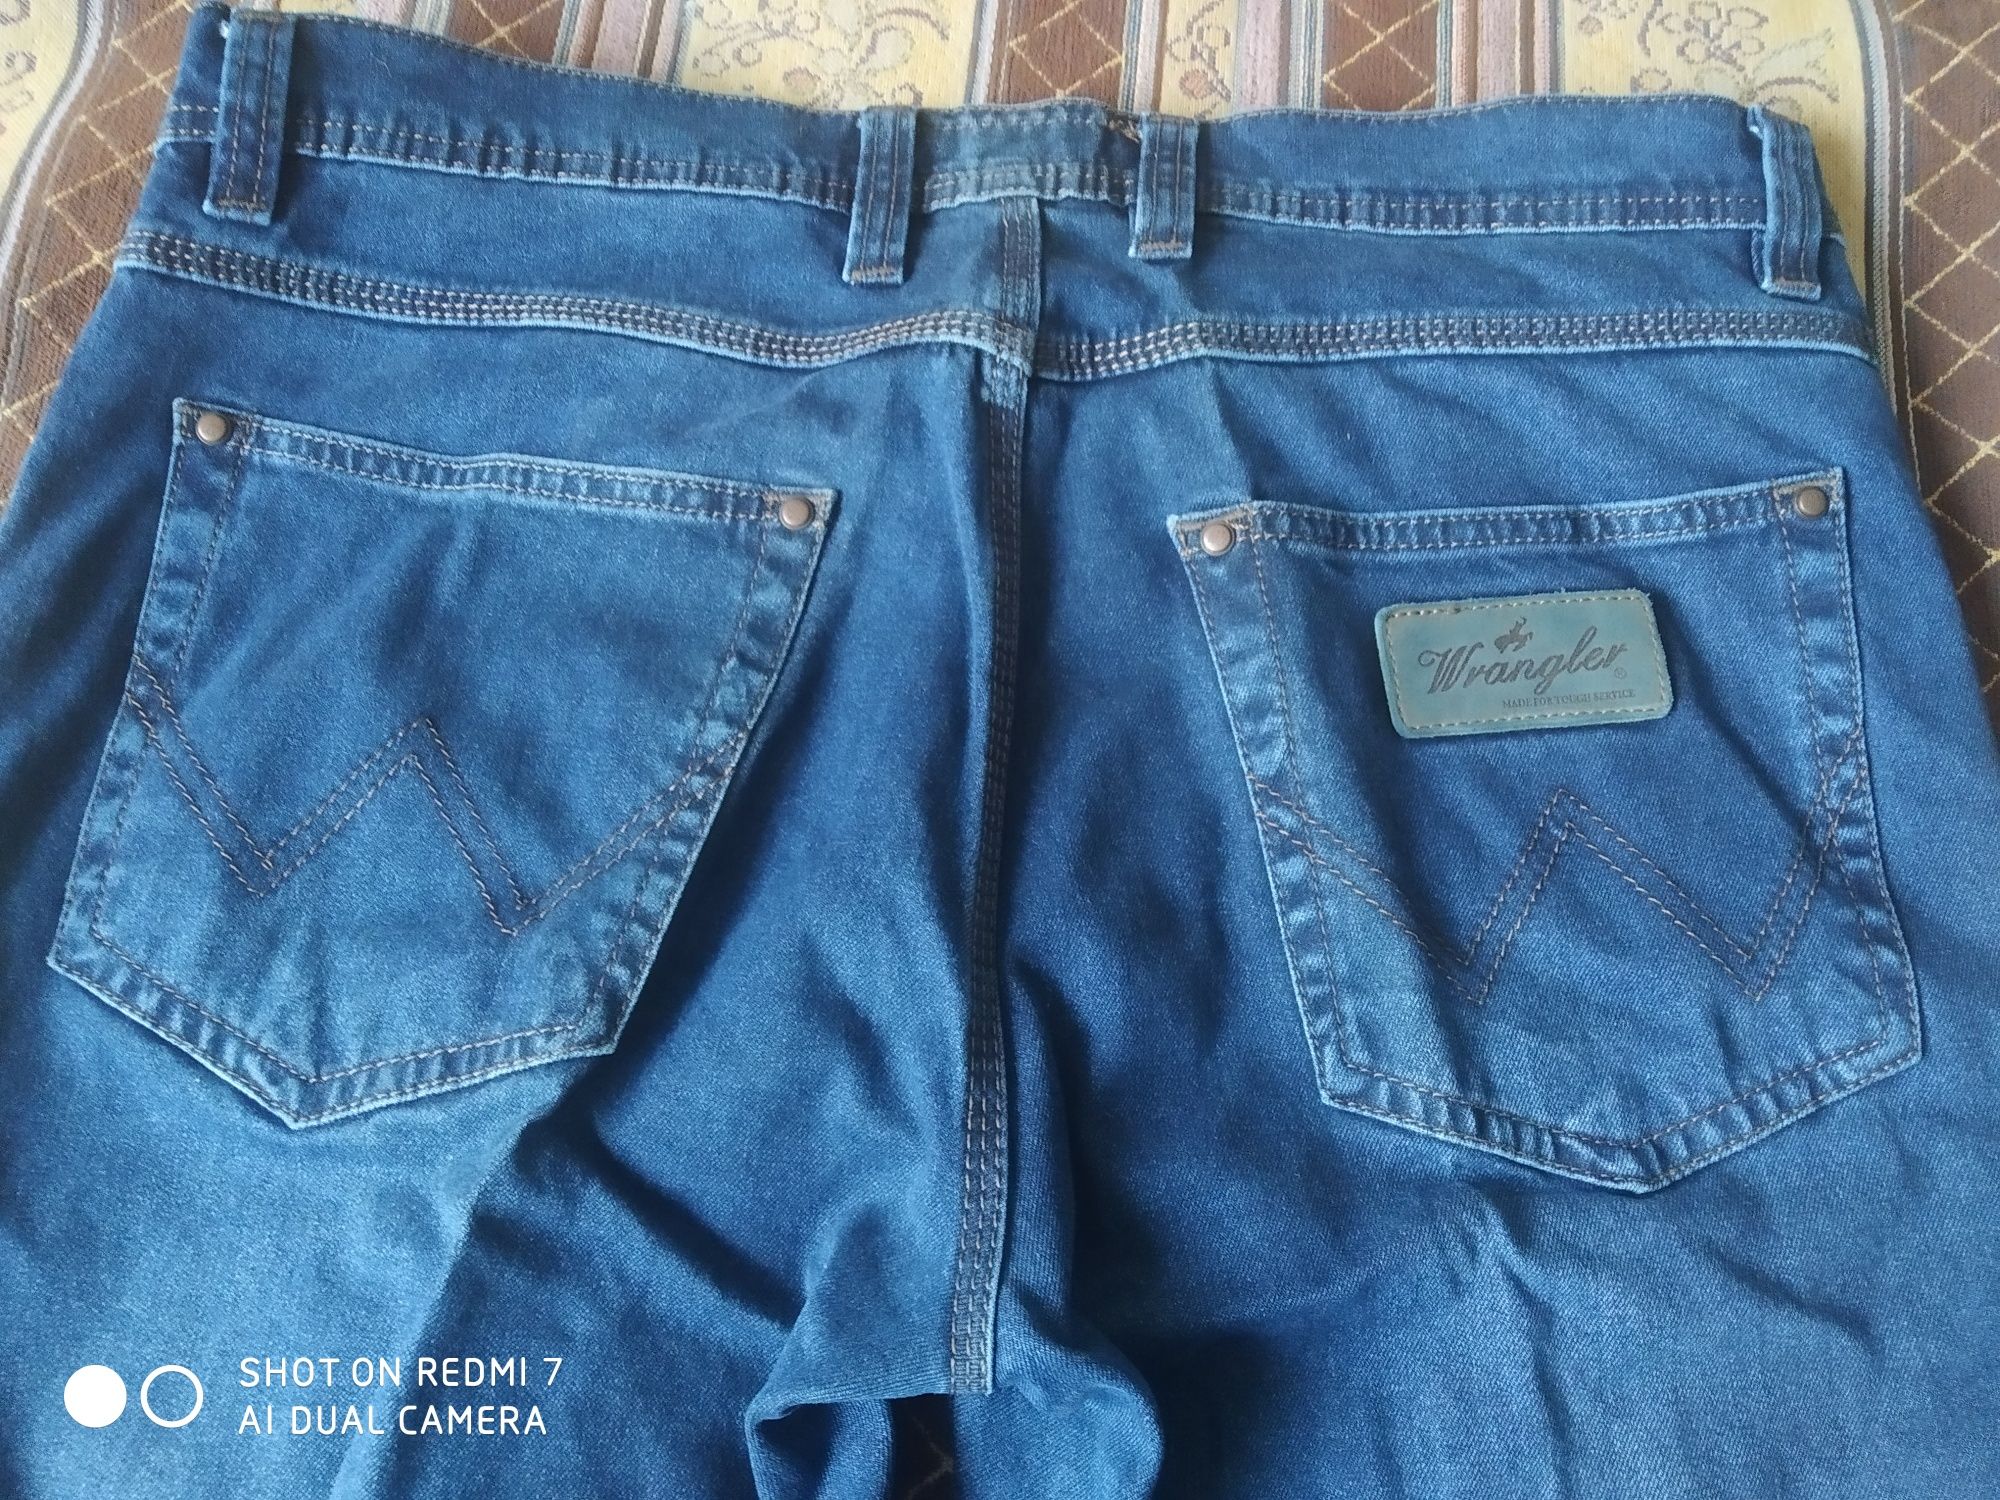 Продам джинсы новые Wrangler ,производство Турция .